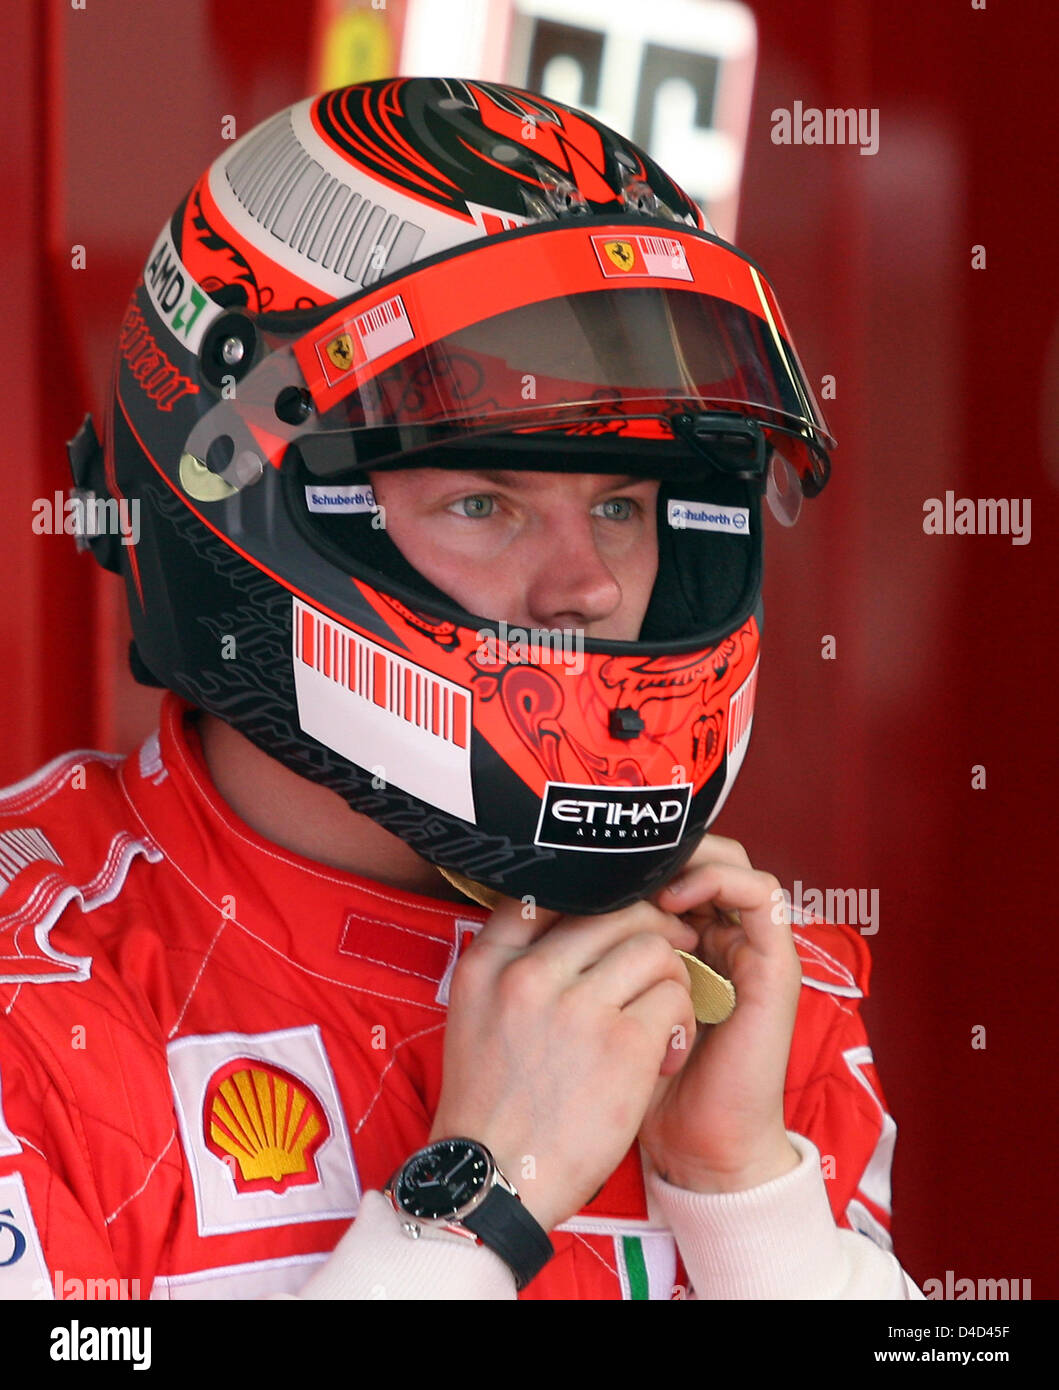 Pilote de formule 1 finlandais Kimi Raikkonen de l'équipe Ferrari ajuste  son casque au garage de l'équipe au cours de la deuxième session d'essais  au circuit d'Albert Park à Melbourne, Australie, 14